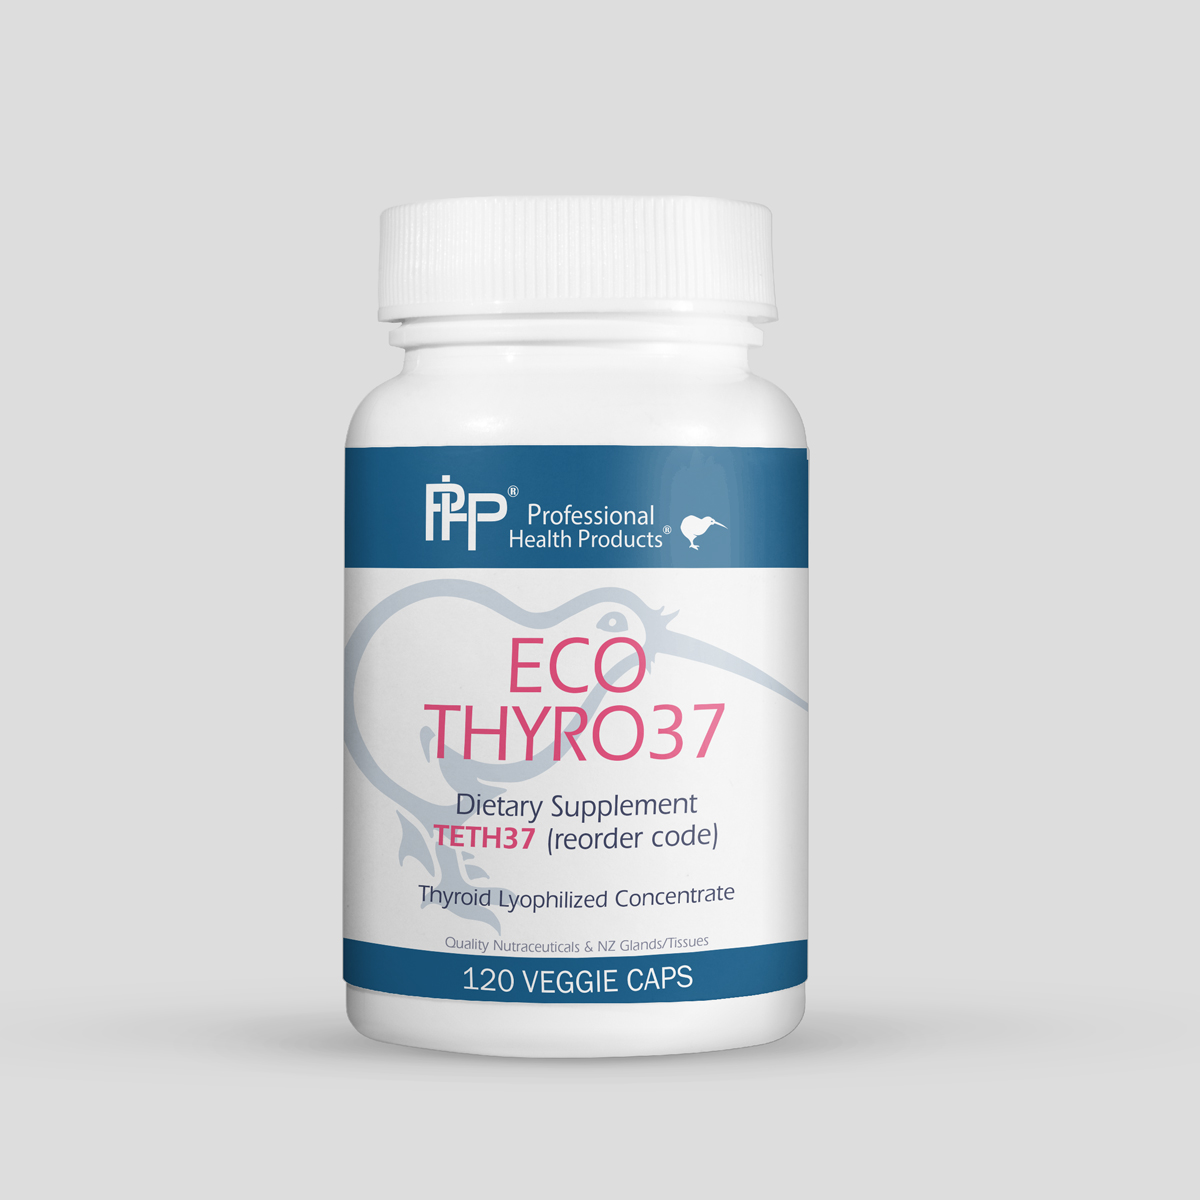 Eco-Thyro 37